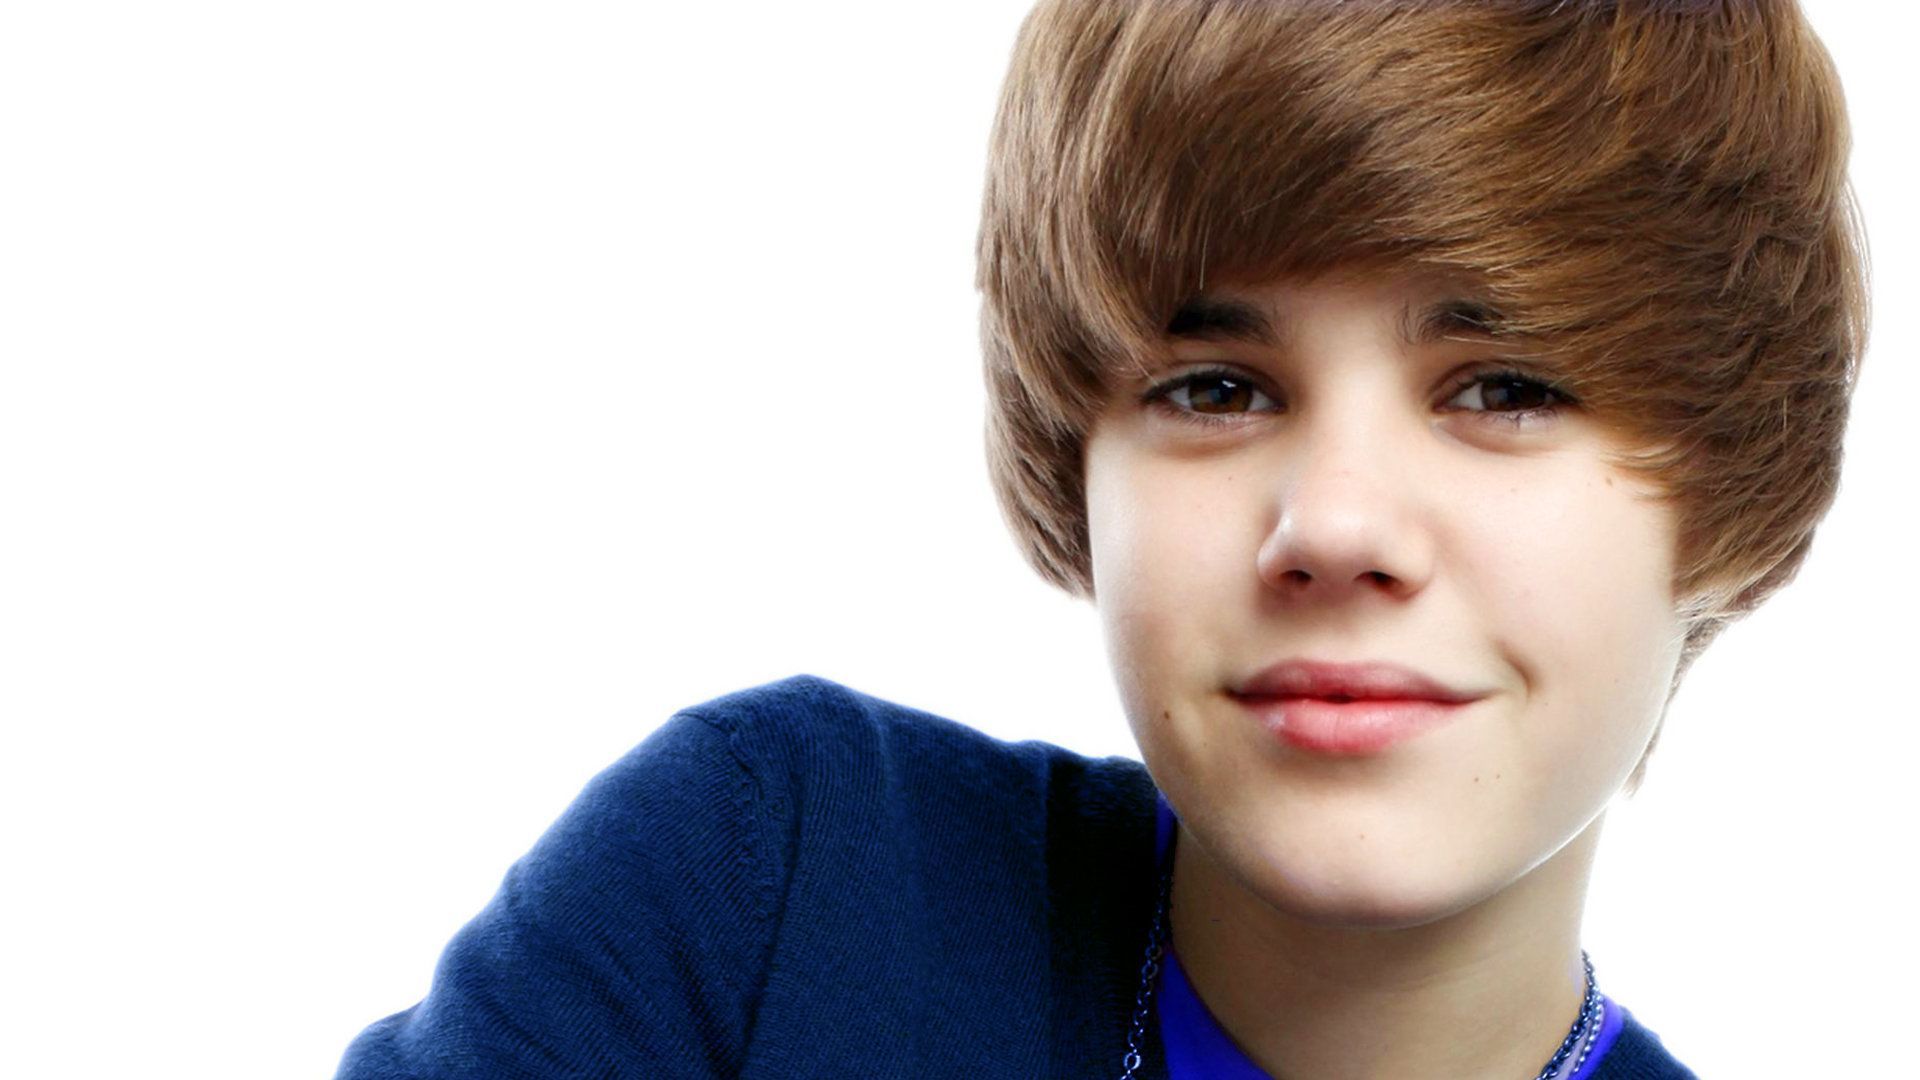 Justin Bieber Hd Wallpapers - 1080p Justin Bieber Hd - 1920x1080 Wallpaper  